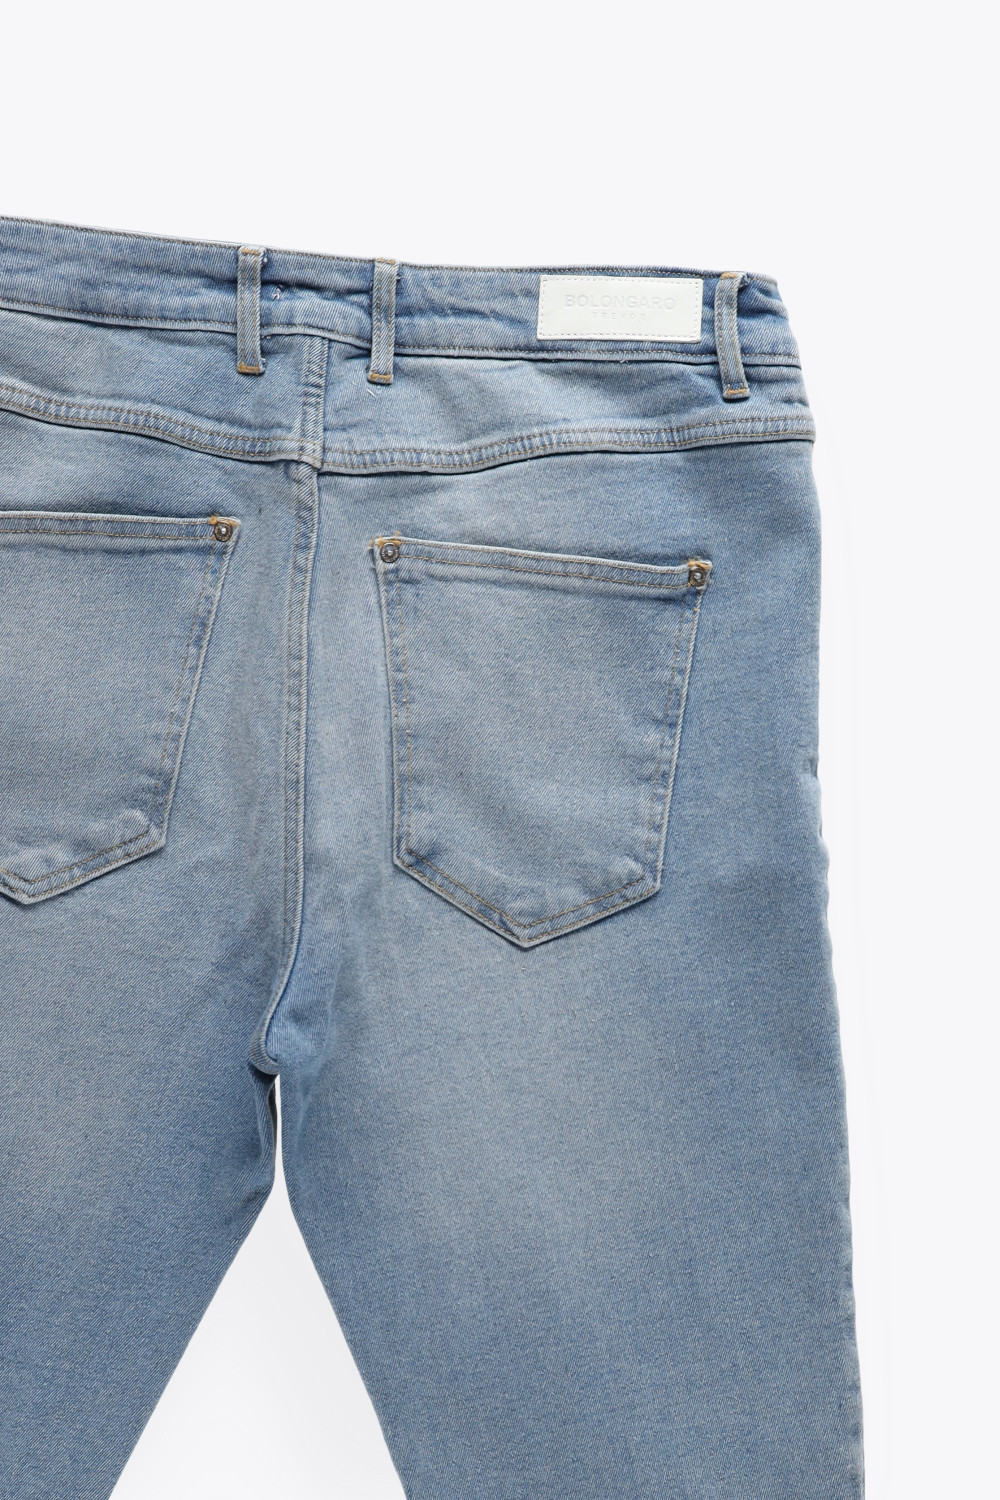 spodnie ripped jeans guziki przetarcia dziury